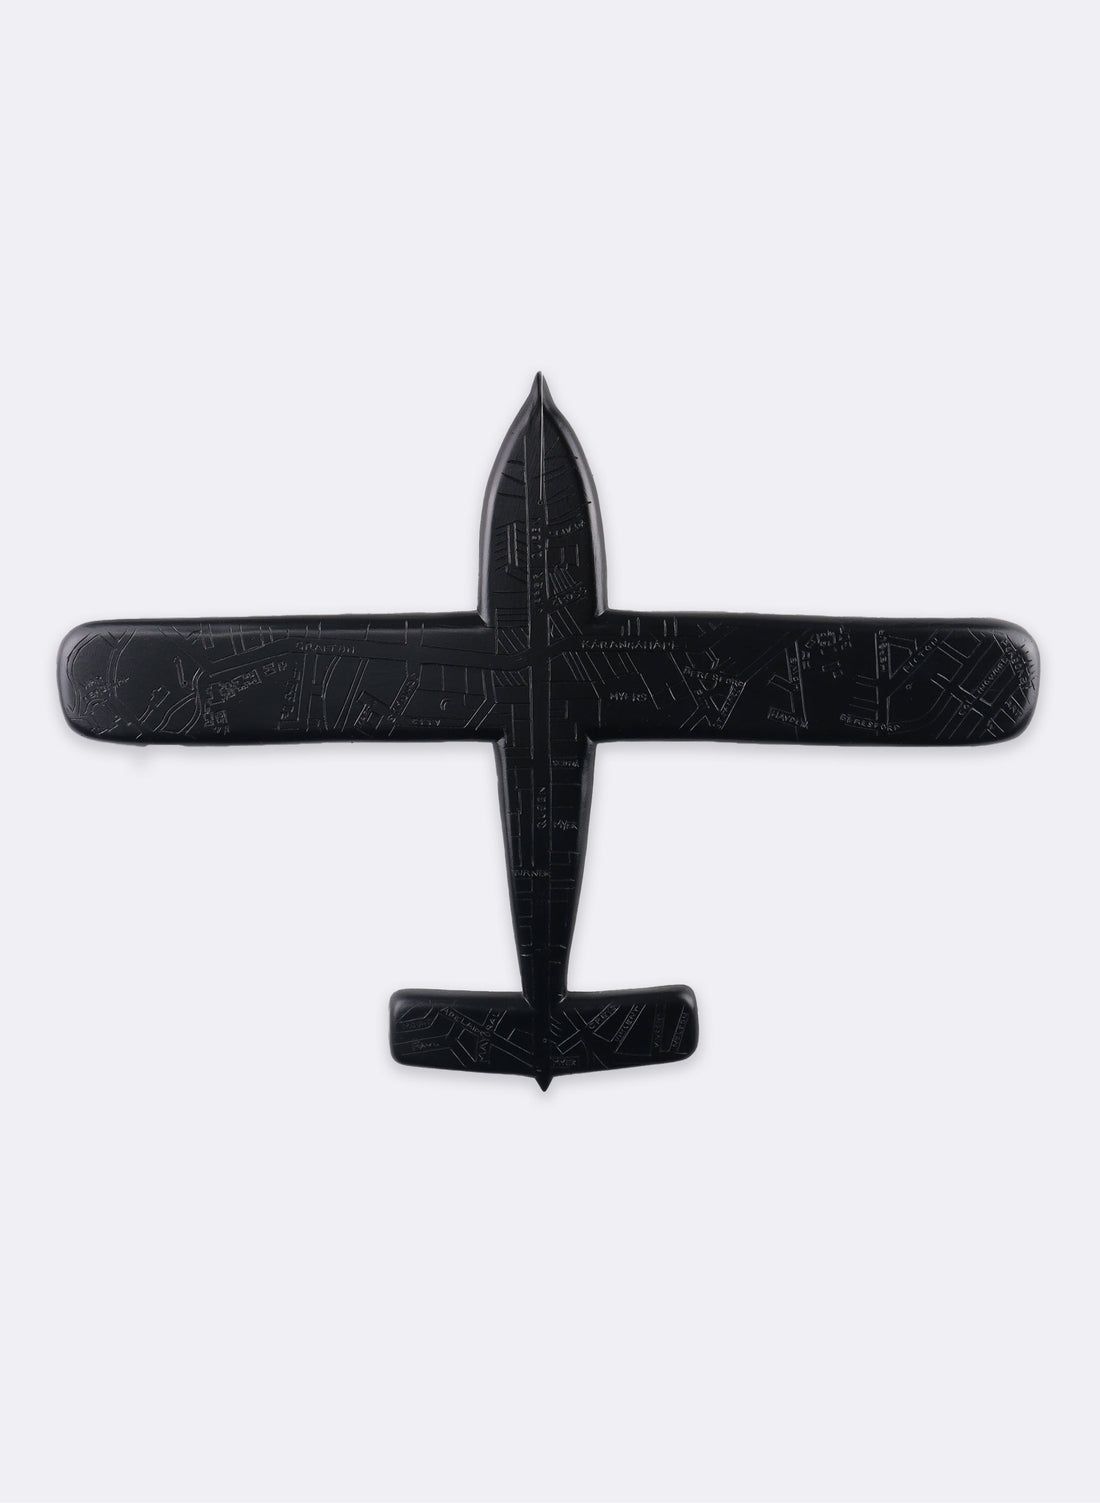 Large Black Spitfire Resin Plane - Auckland